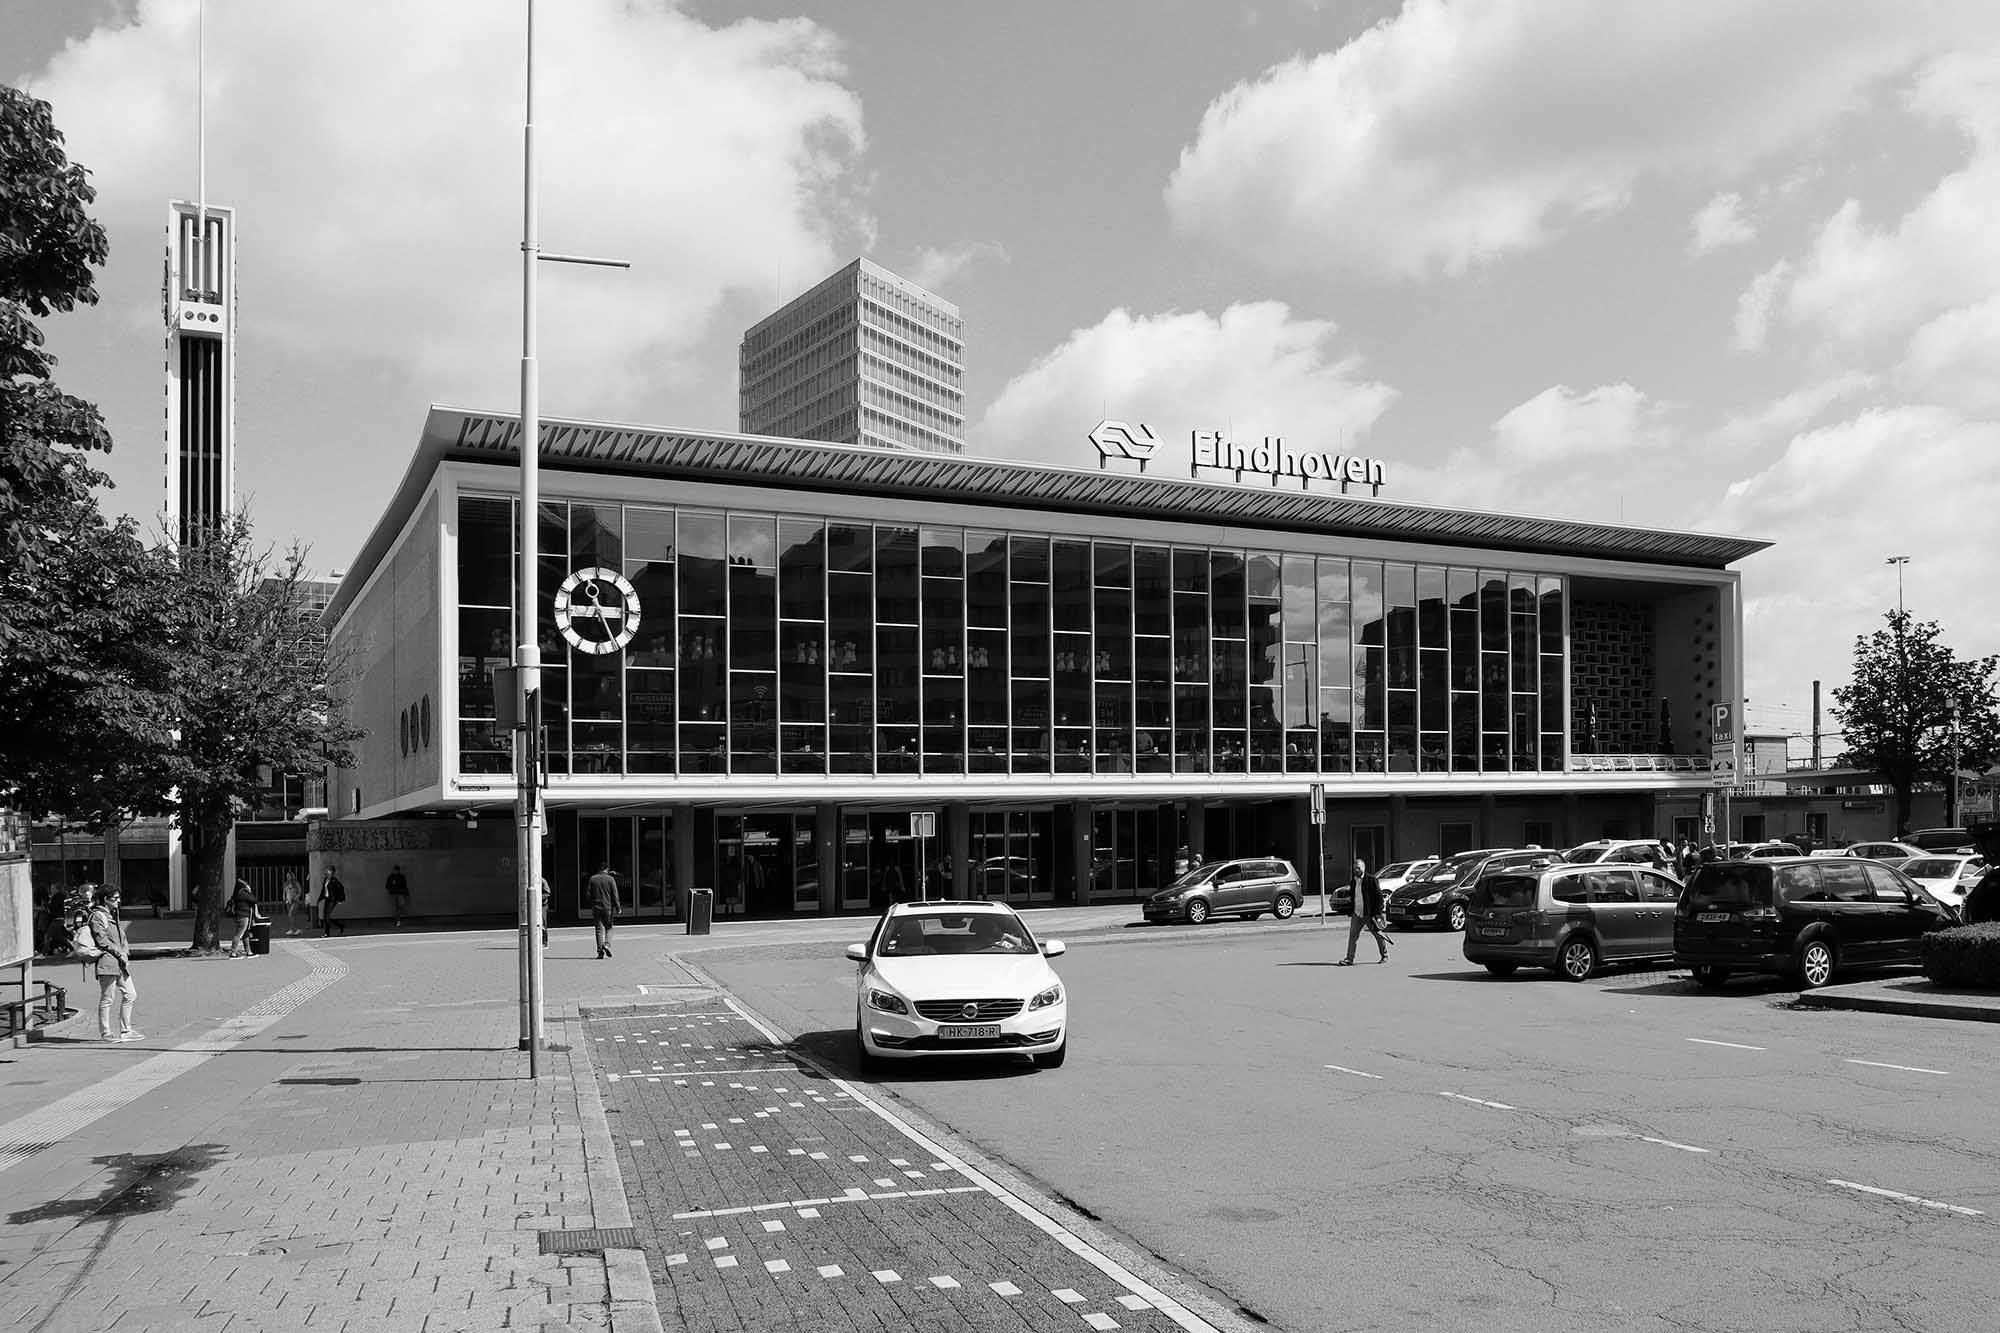 Der Eindhovener Bahnhof entstand 1956 nach Plänen von Koen van der Gaast. Ein Philips-Radio war sein Vorbild.